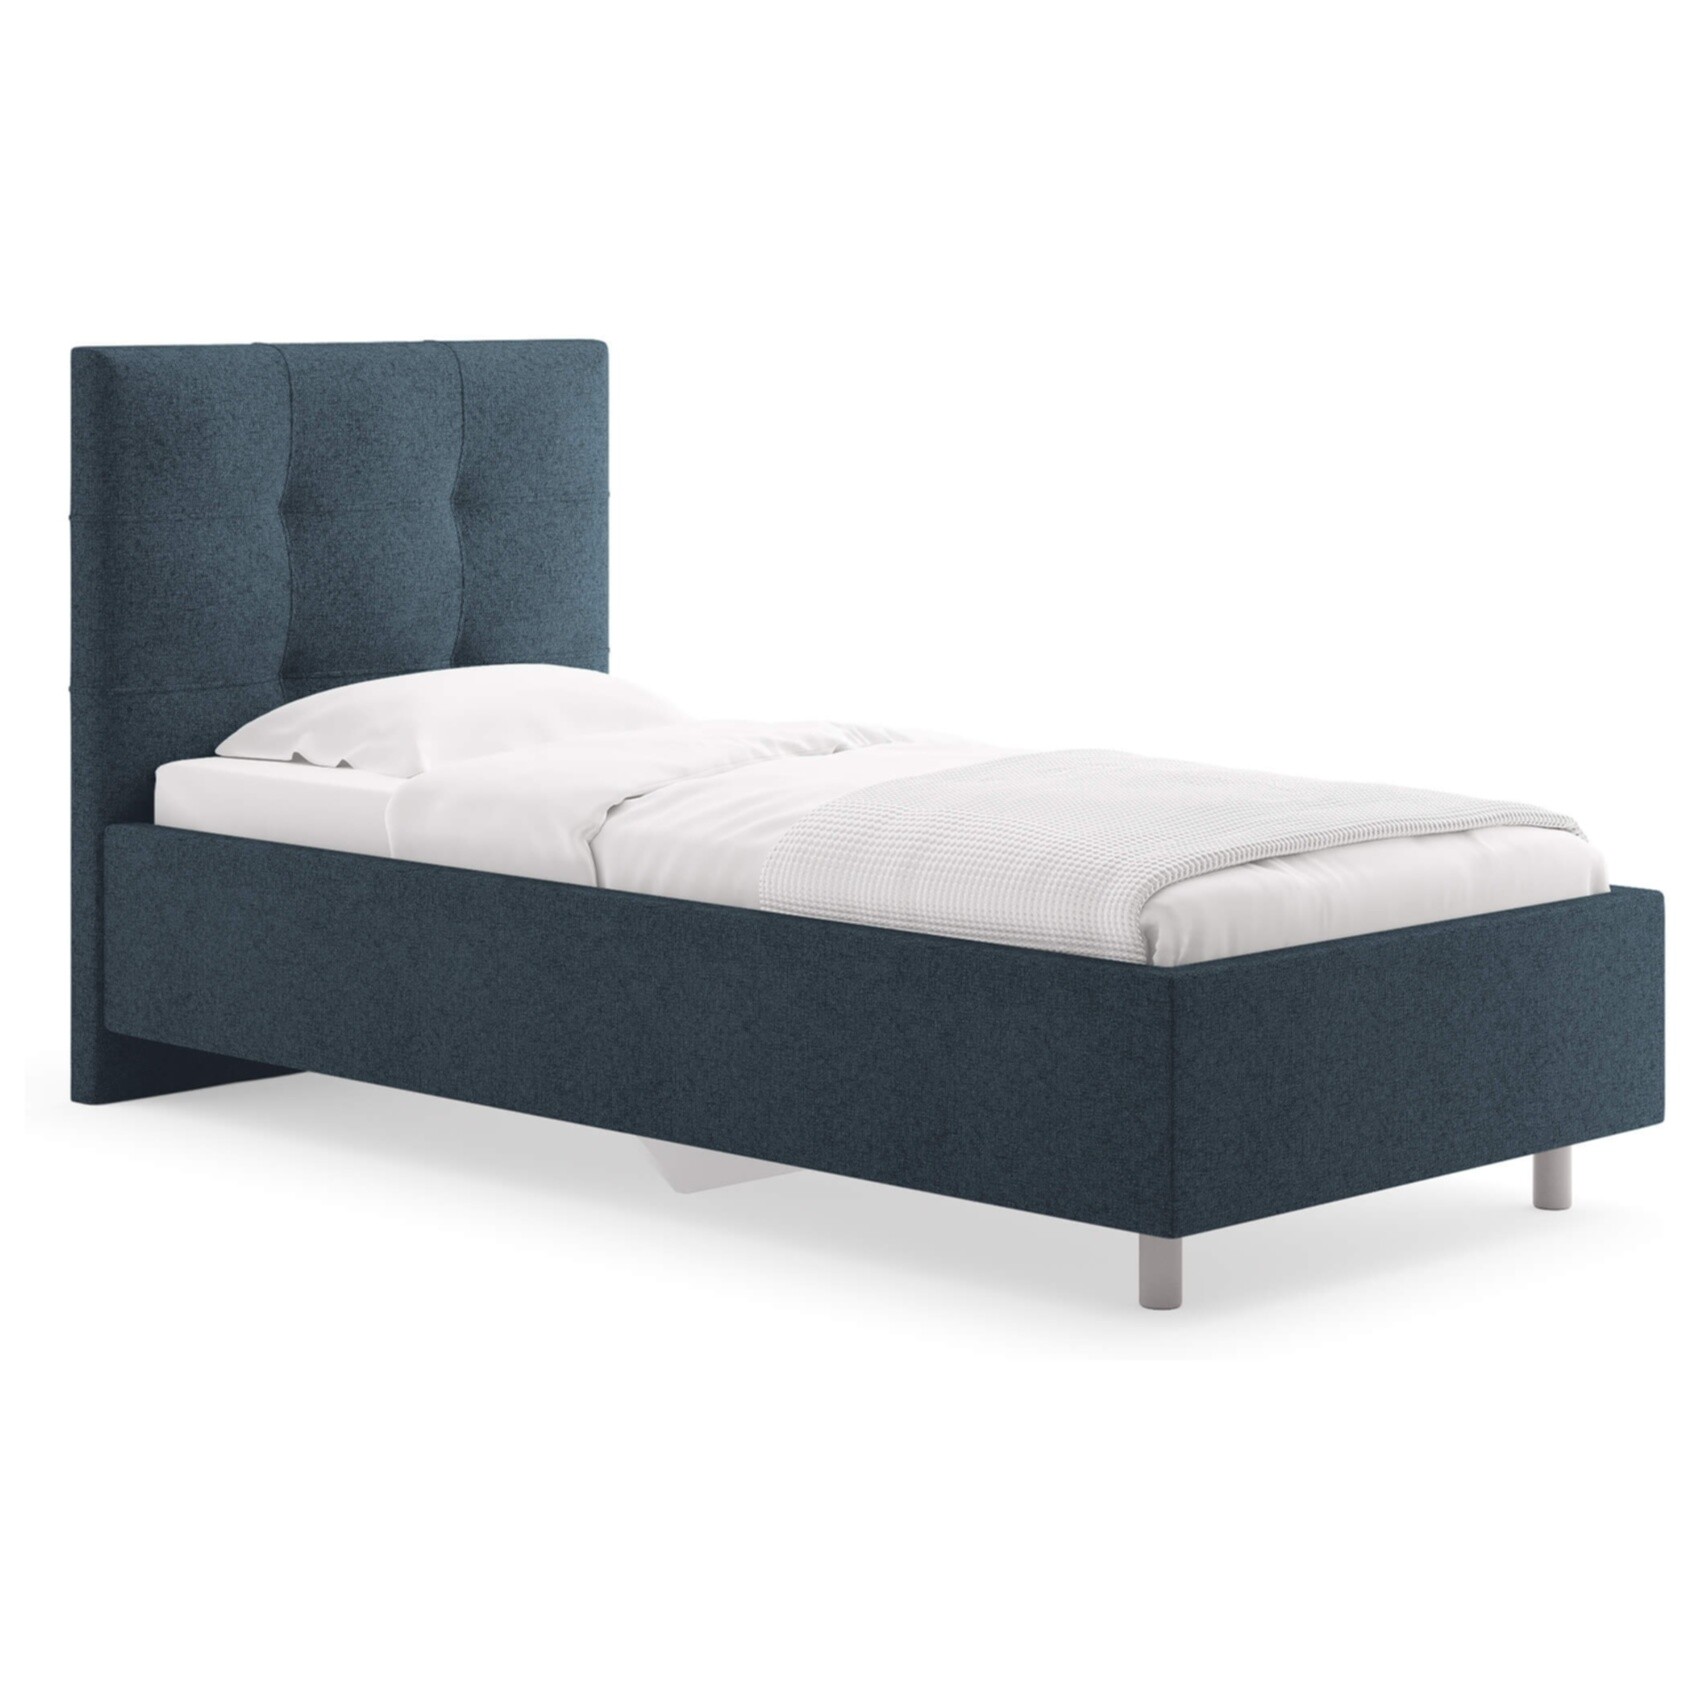 Кровать с мягким изголовьем односпальная 80х200 см кашемир синяя Caprice